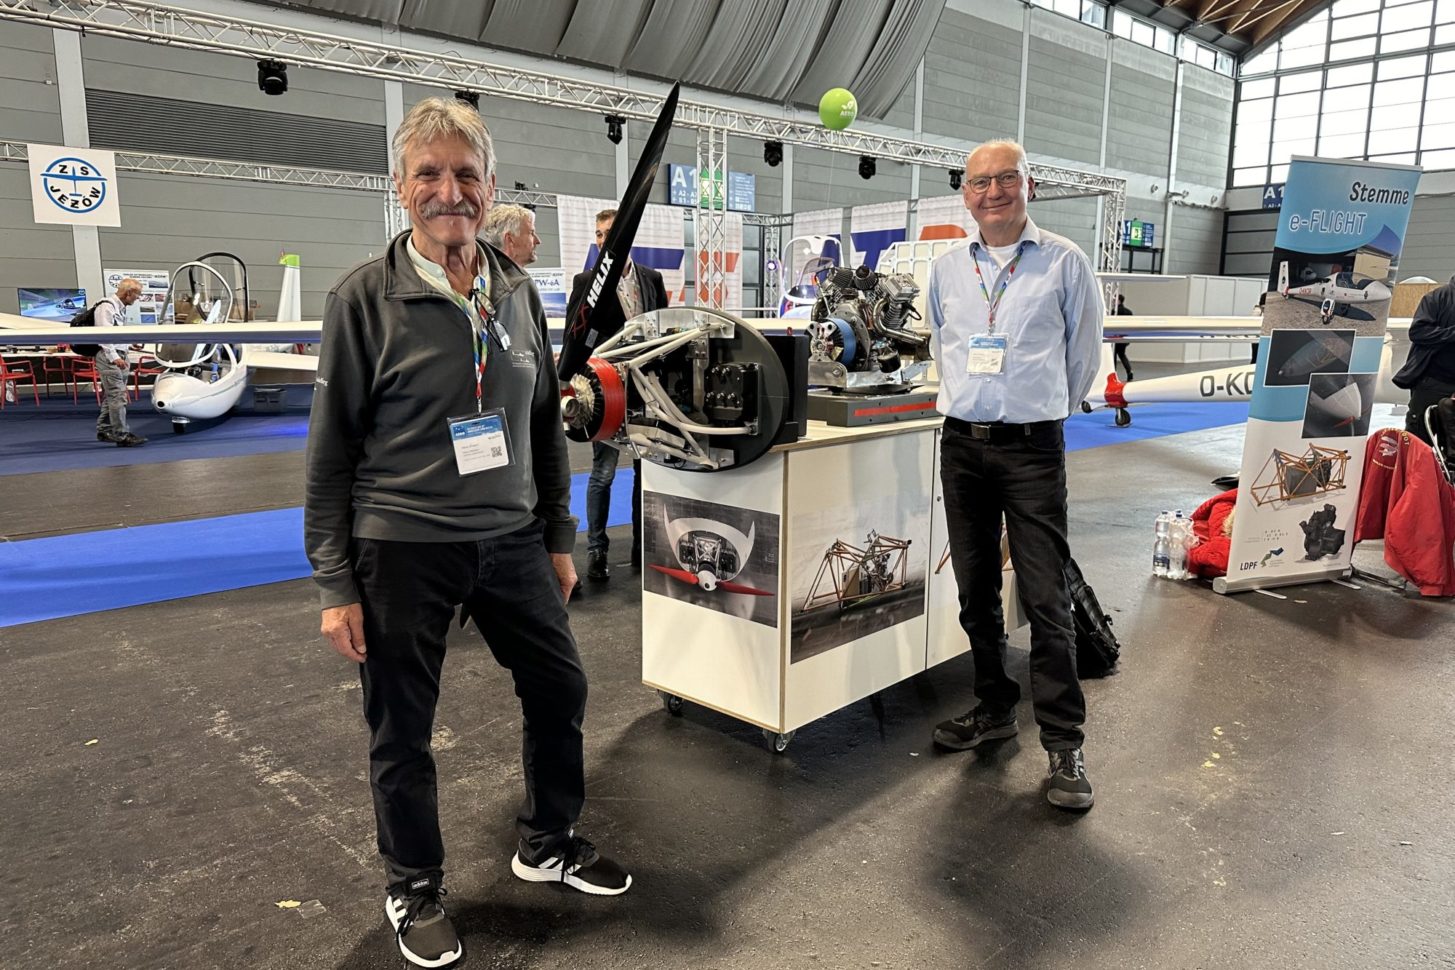 Klaus Ohlmann (links) und Karl Pickan (rechts) präsentieren vor einem Modell des innovativen Elektroantriebs, bestehend aus Batterien und einem Range Extender. Dieses Konzept verkörpert die Zukunft des emissionsarmen Segelfliegens, kombiniert traditionelle Glidertechnologie mit moderner elektrischer Effizienz.